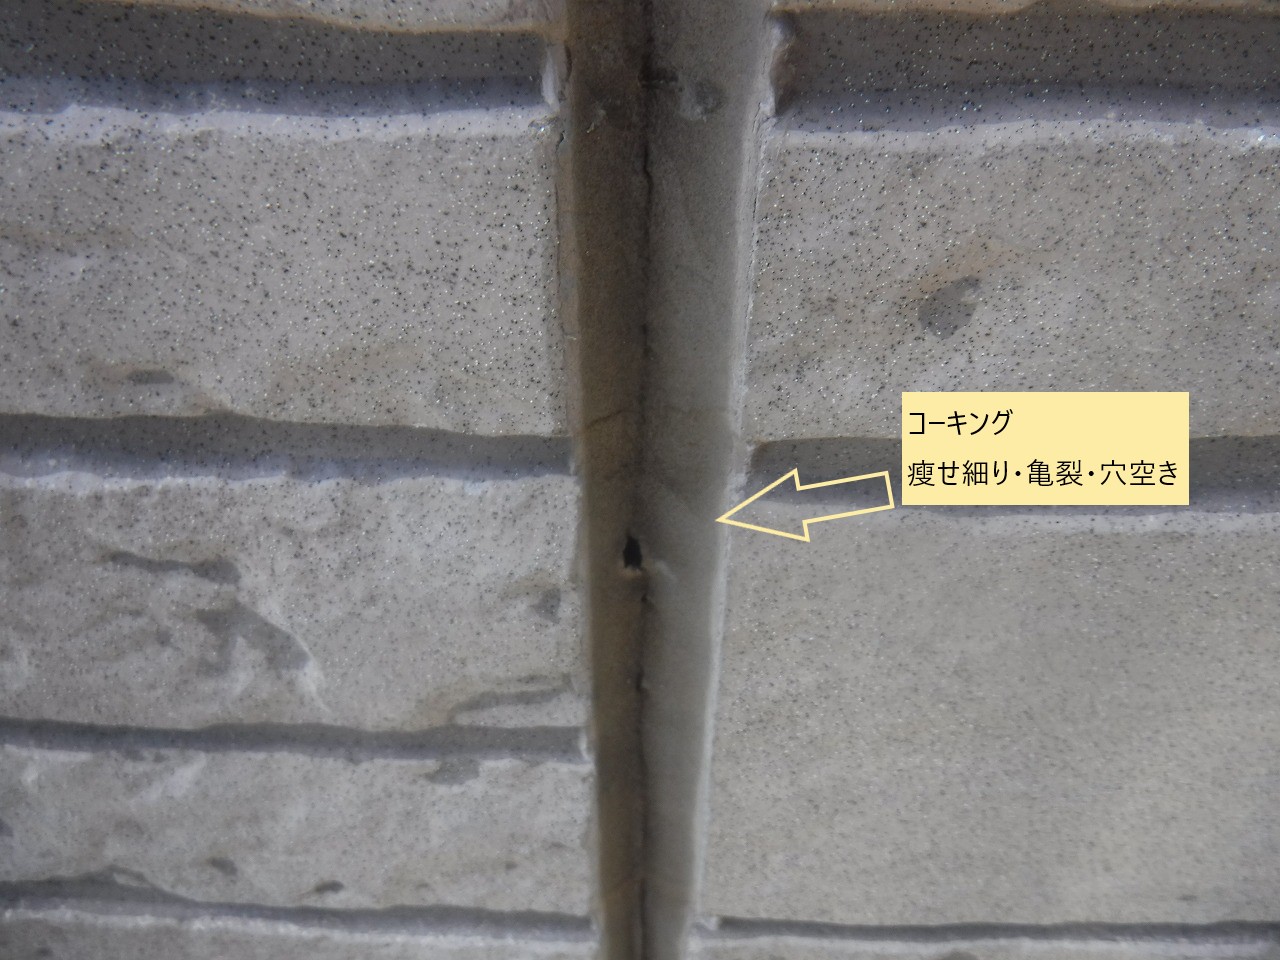 蓮田市で外壁サイディングの目地コーキング打ち替えと、ベランダ防水のご提案